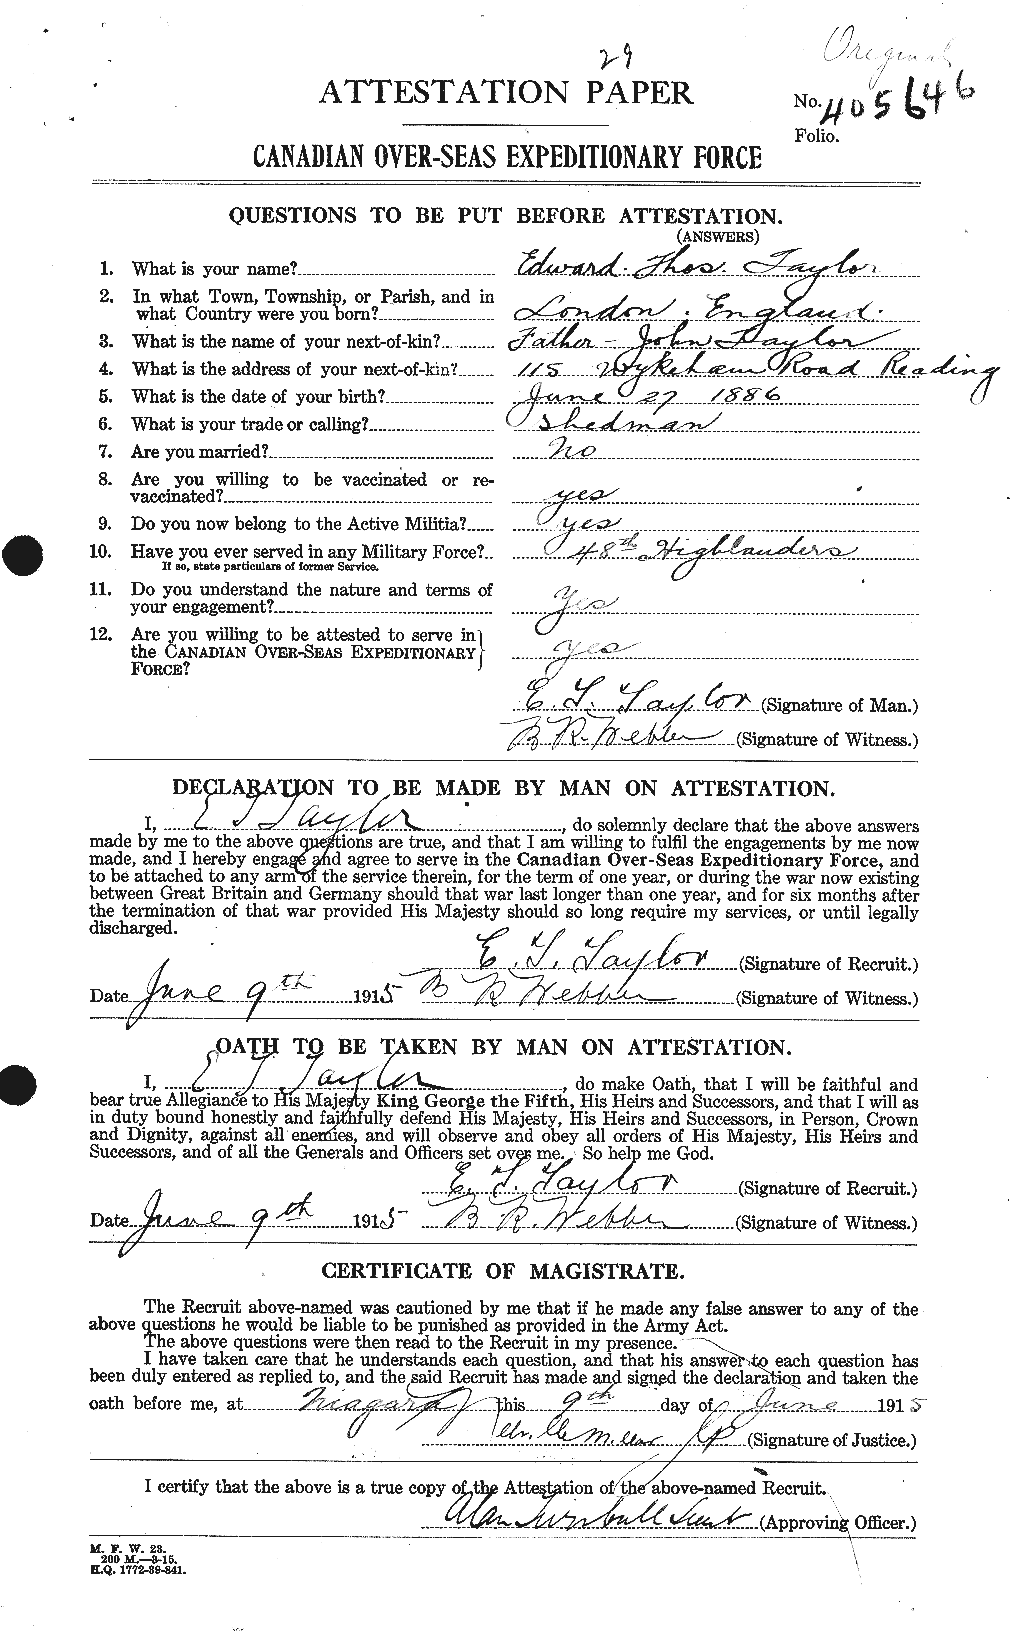 Dossiers du Personnel de la Première Guerre mondiale - CEC 627328a